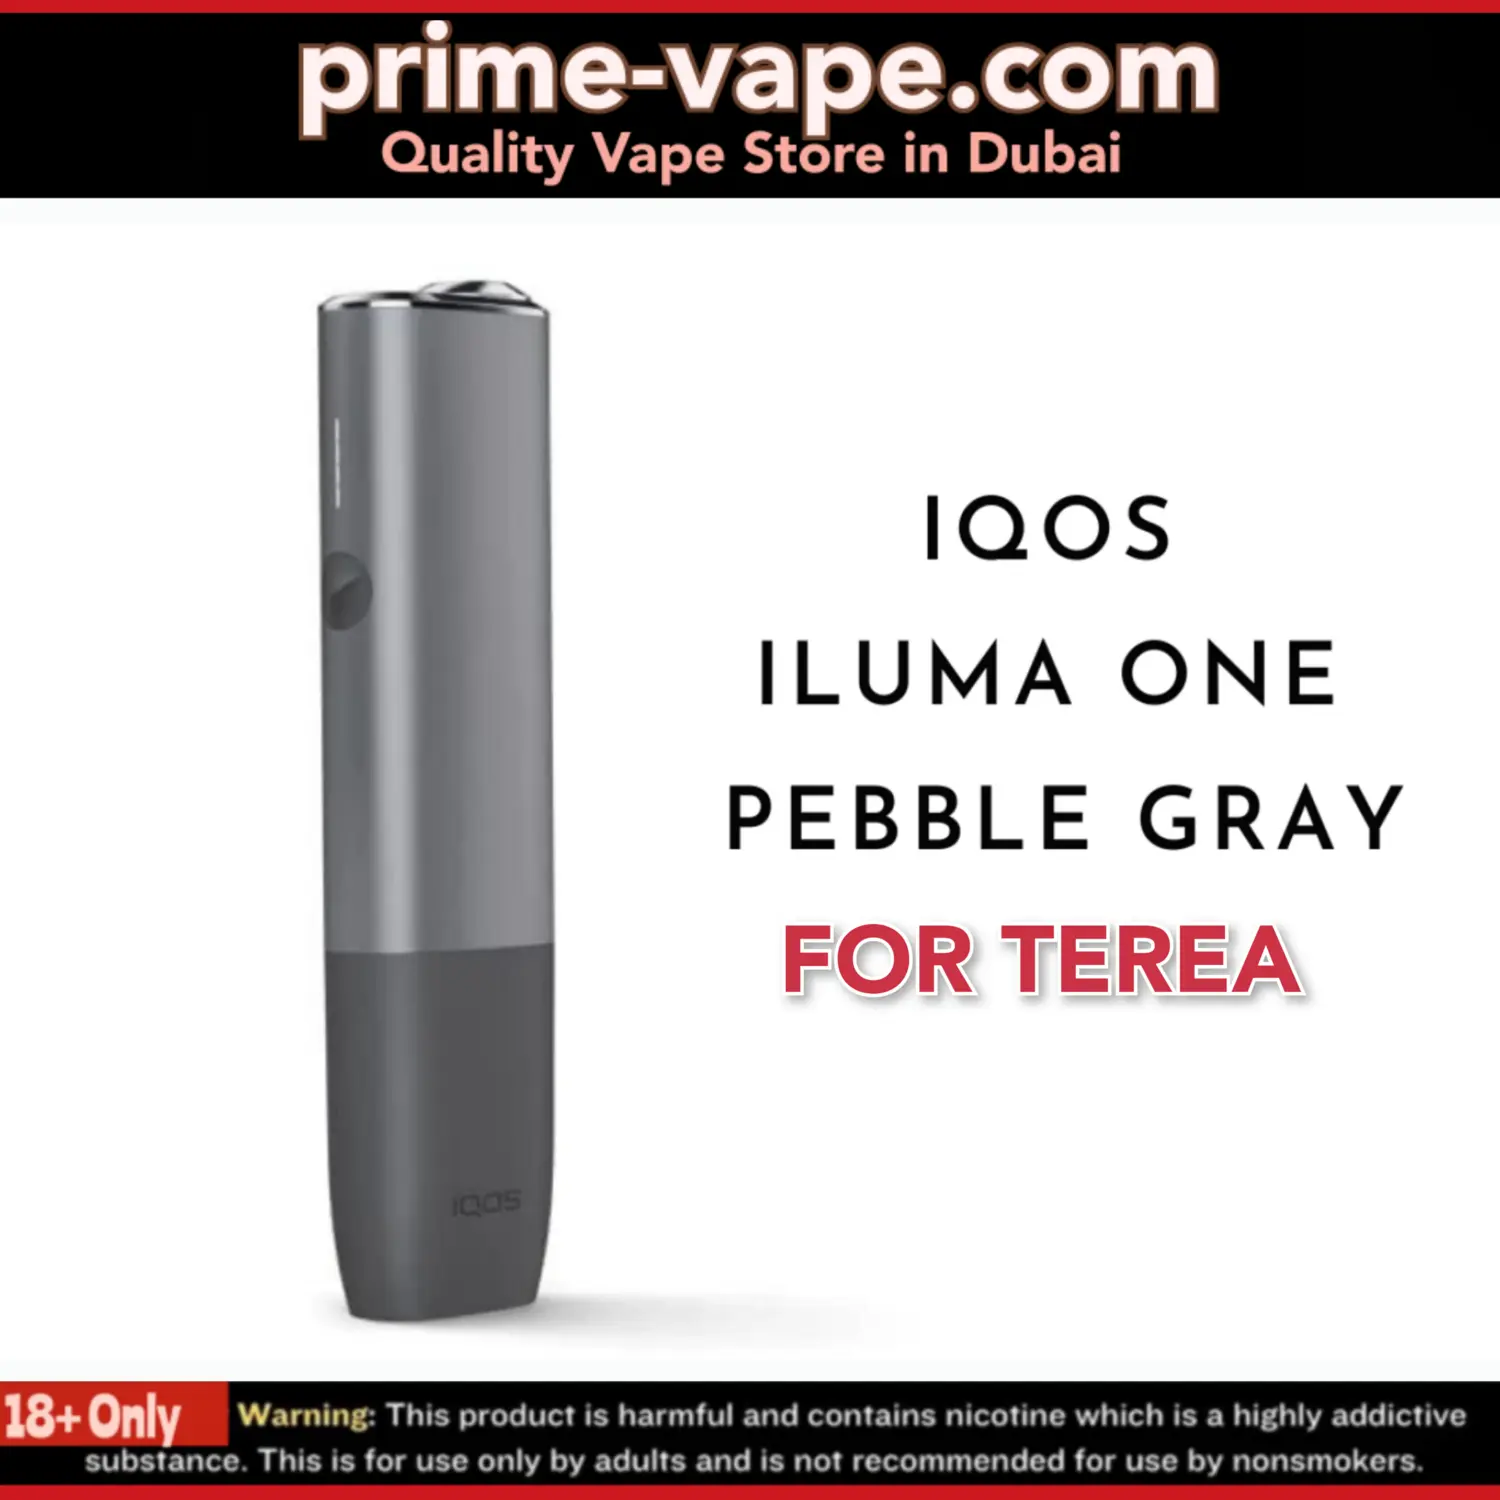 IQOS Iluma One - Pebble Gray - Buy Online